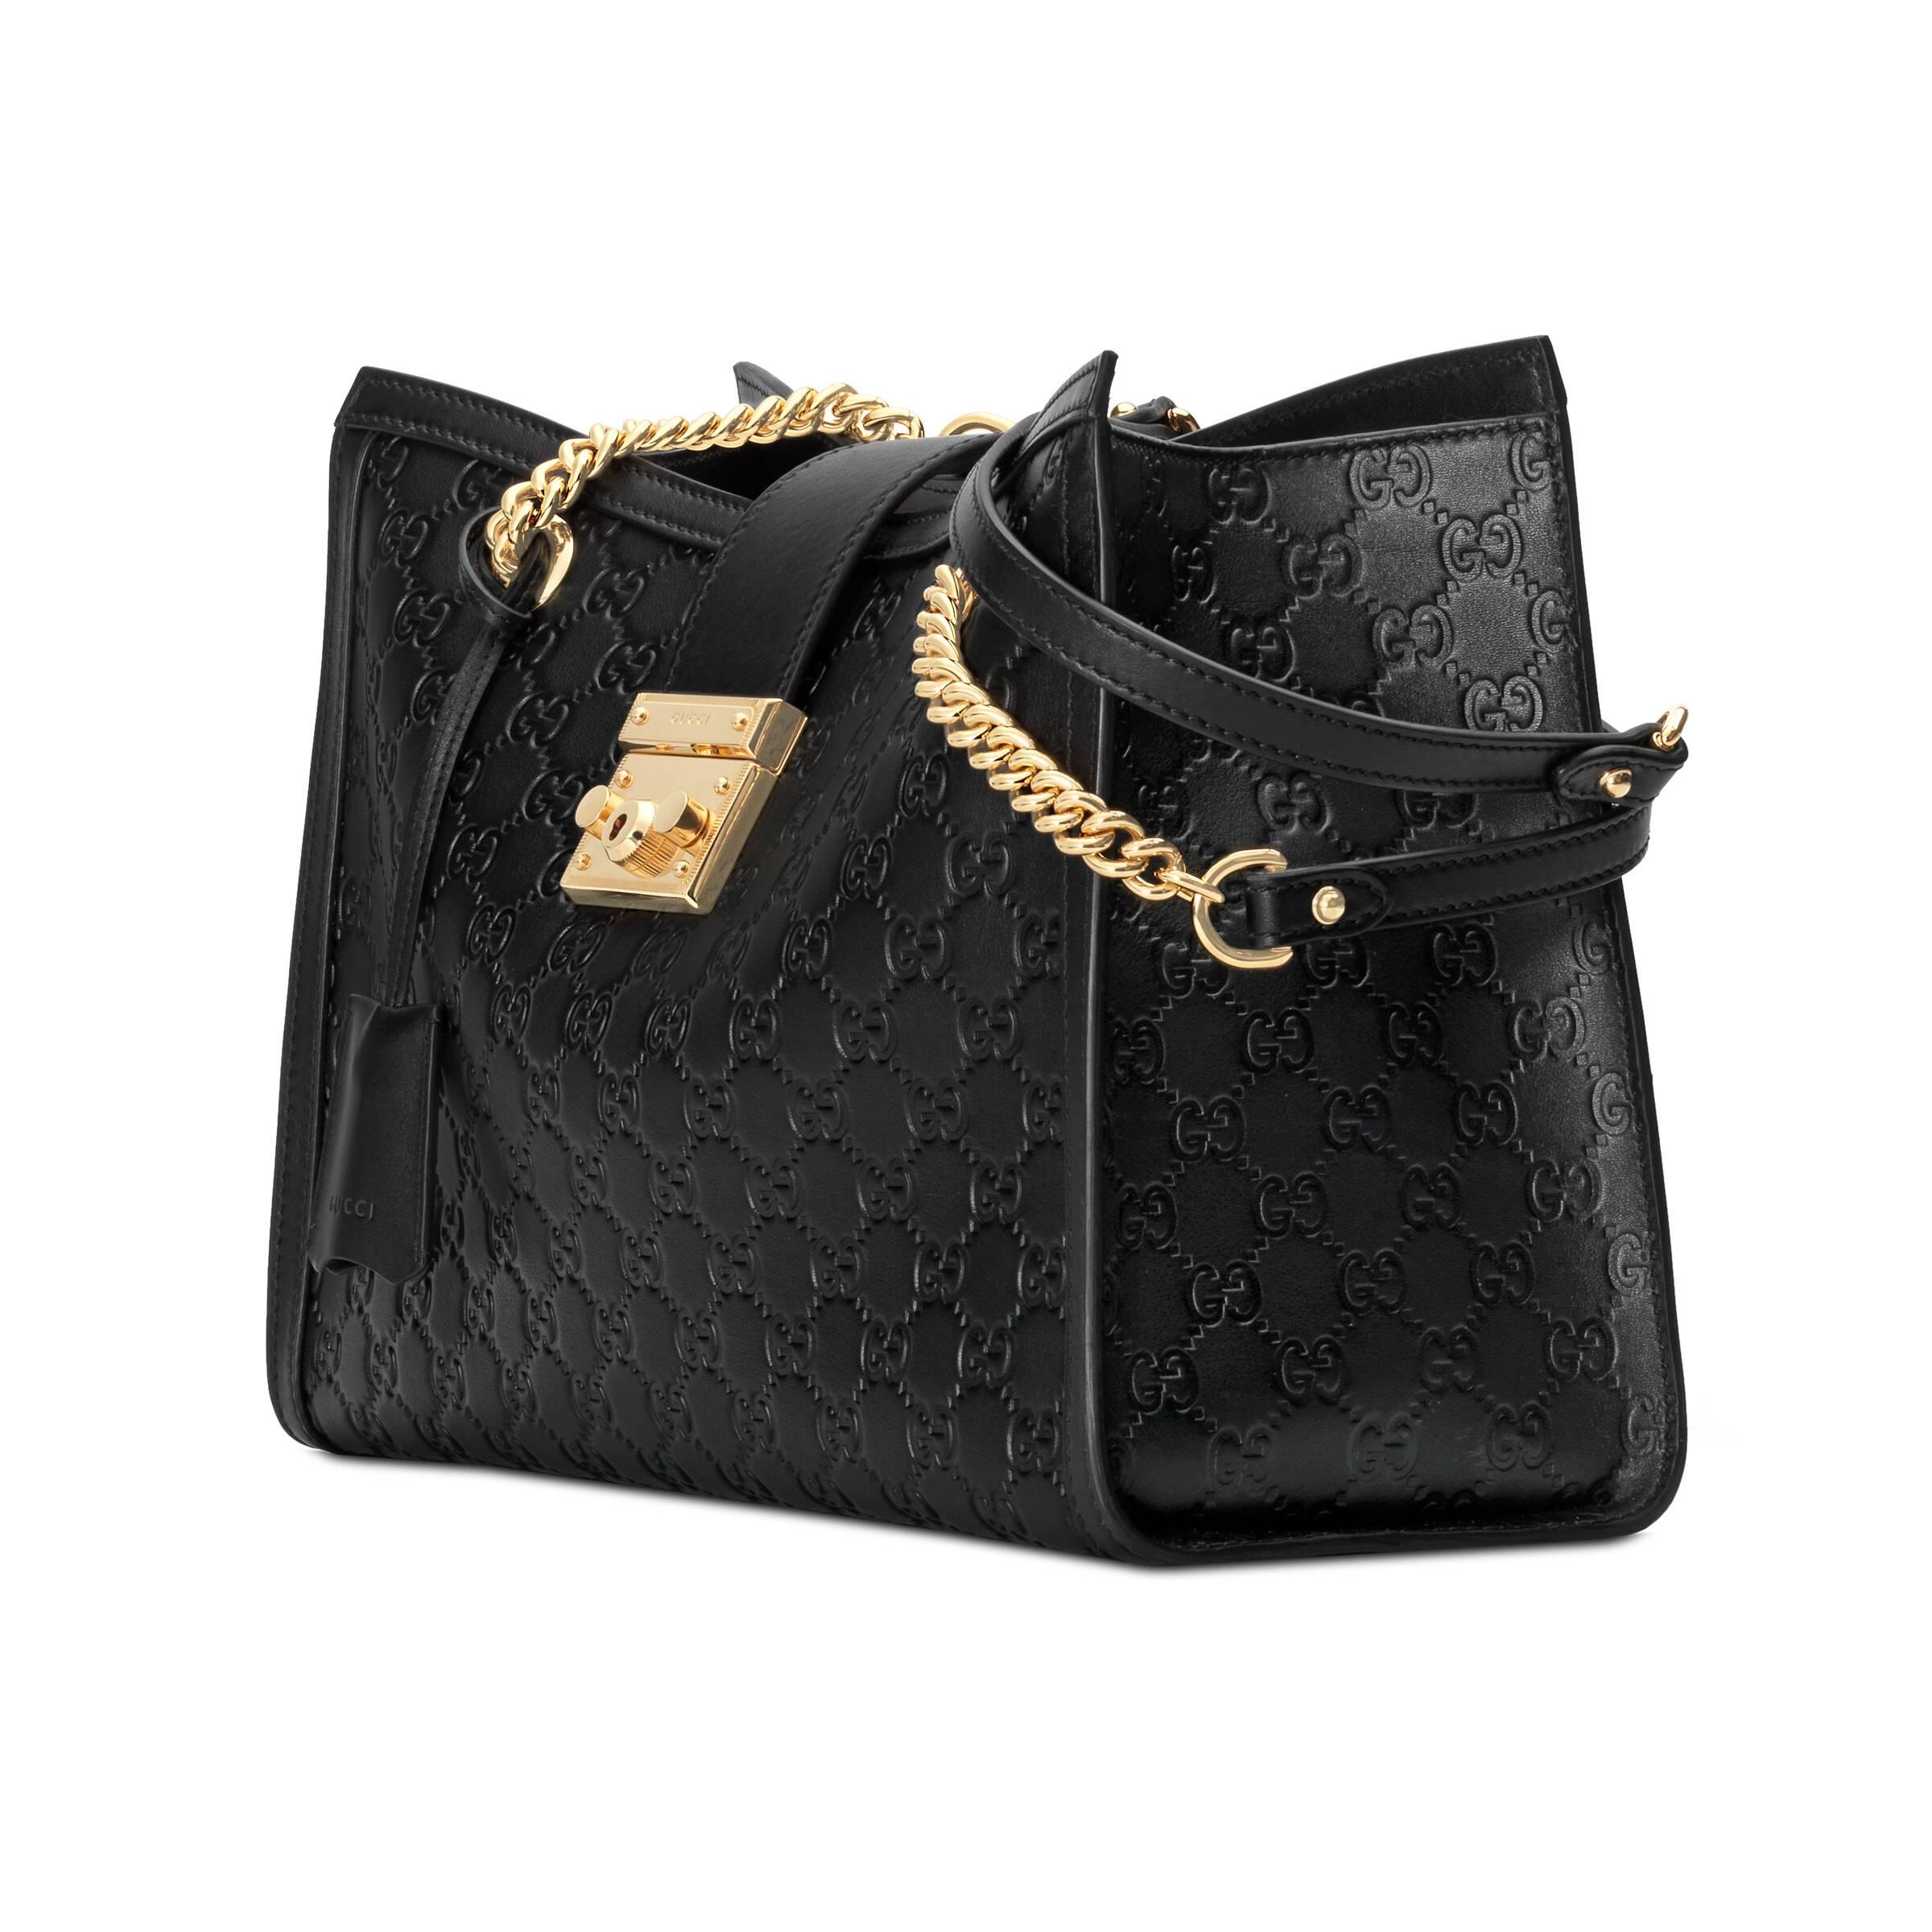 Gucci Padlock Gucci Signature Small Shoulder Bag, Black